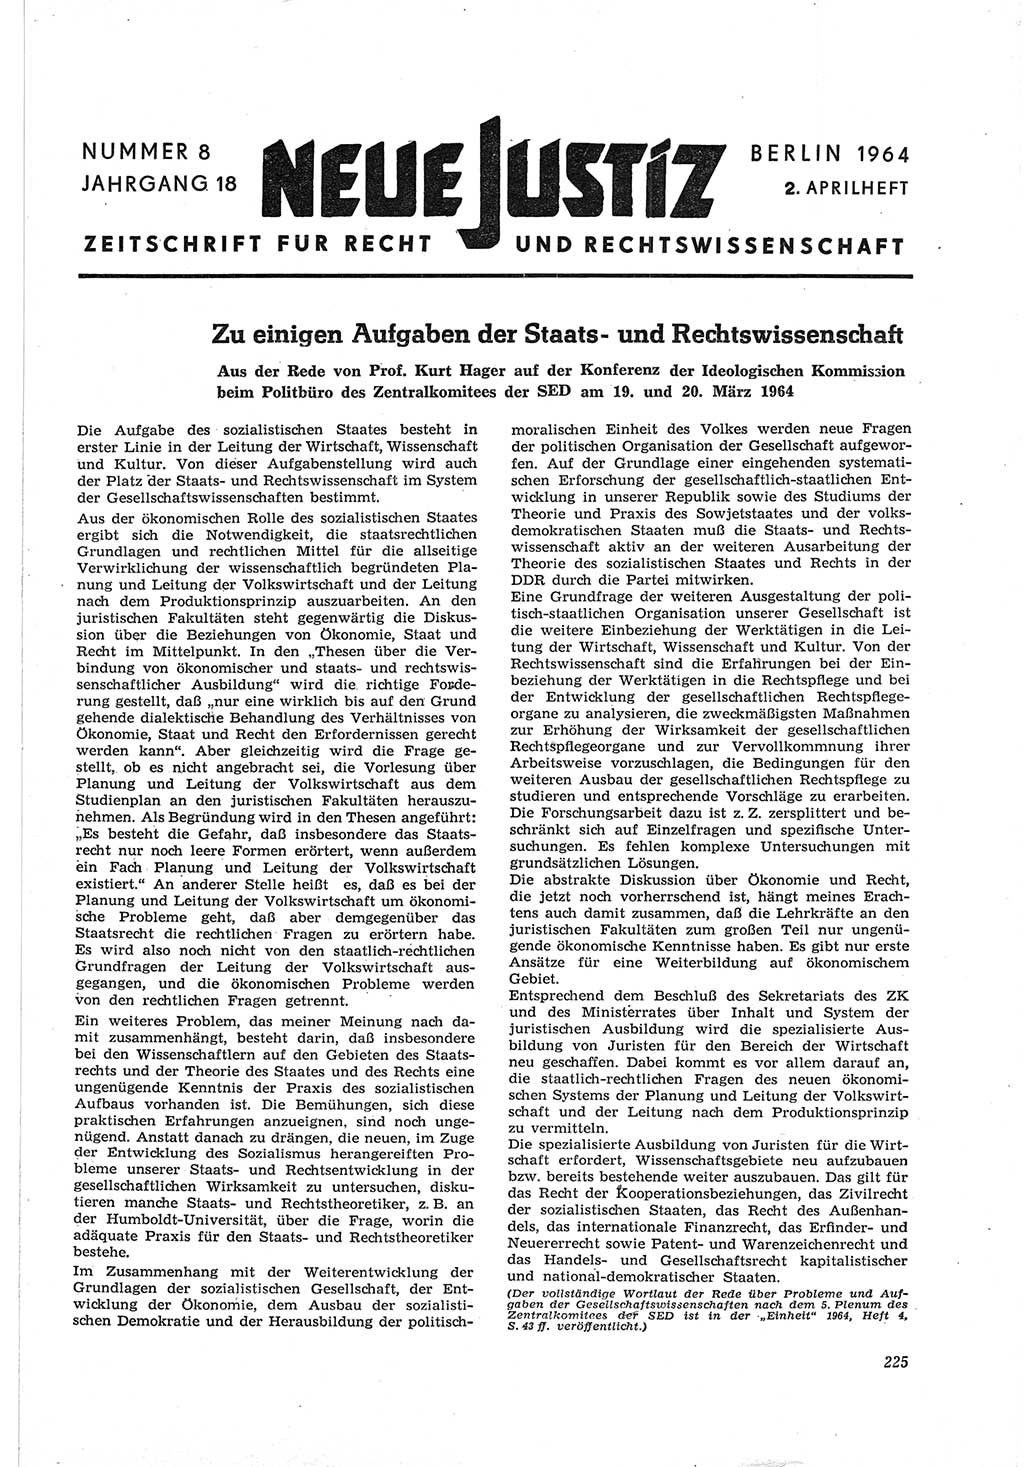 Neue Justiz (NJ), Zeitschrift für Recht und Rechtswissenschaft [Deutsche Demokratische Republik (DDR)], 18. Jahrgang 1964, Seite 225 (NJ DDR 1964, S. 225)